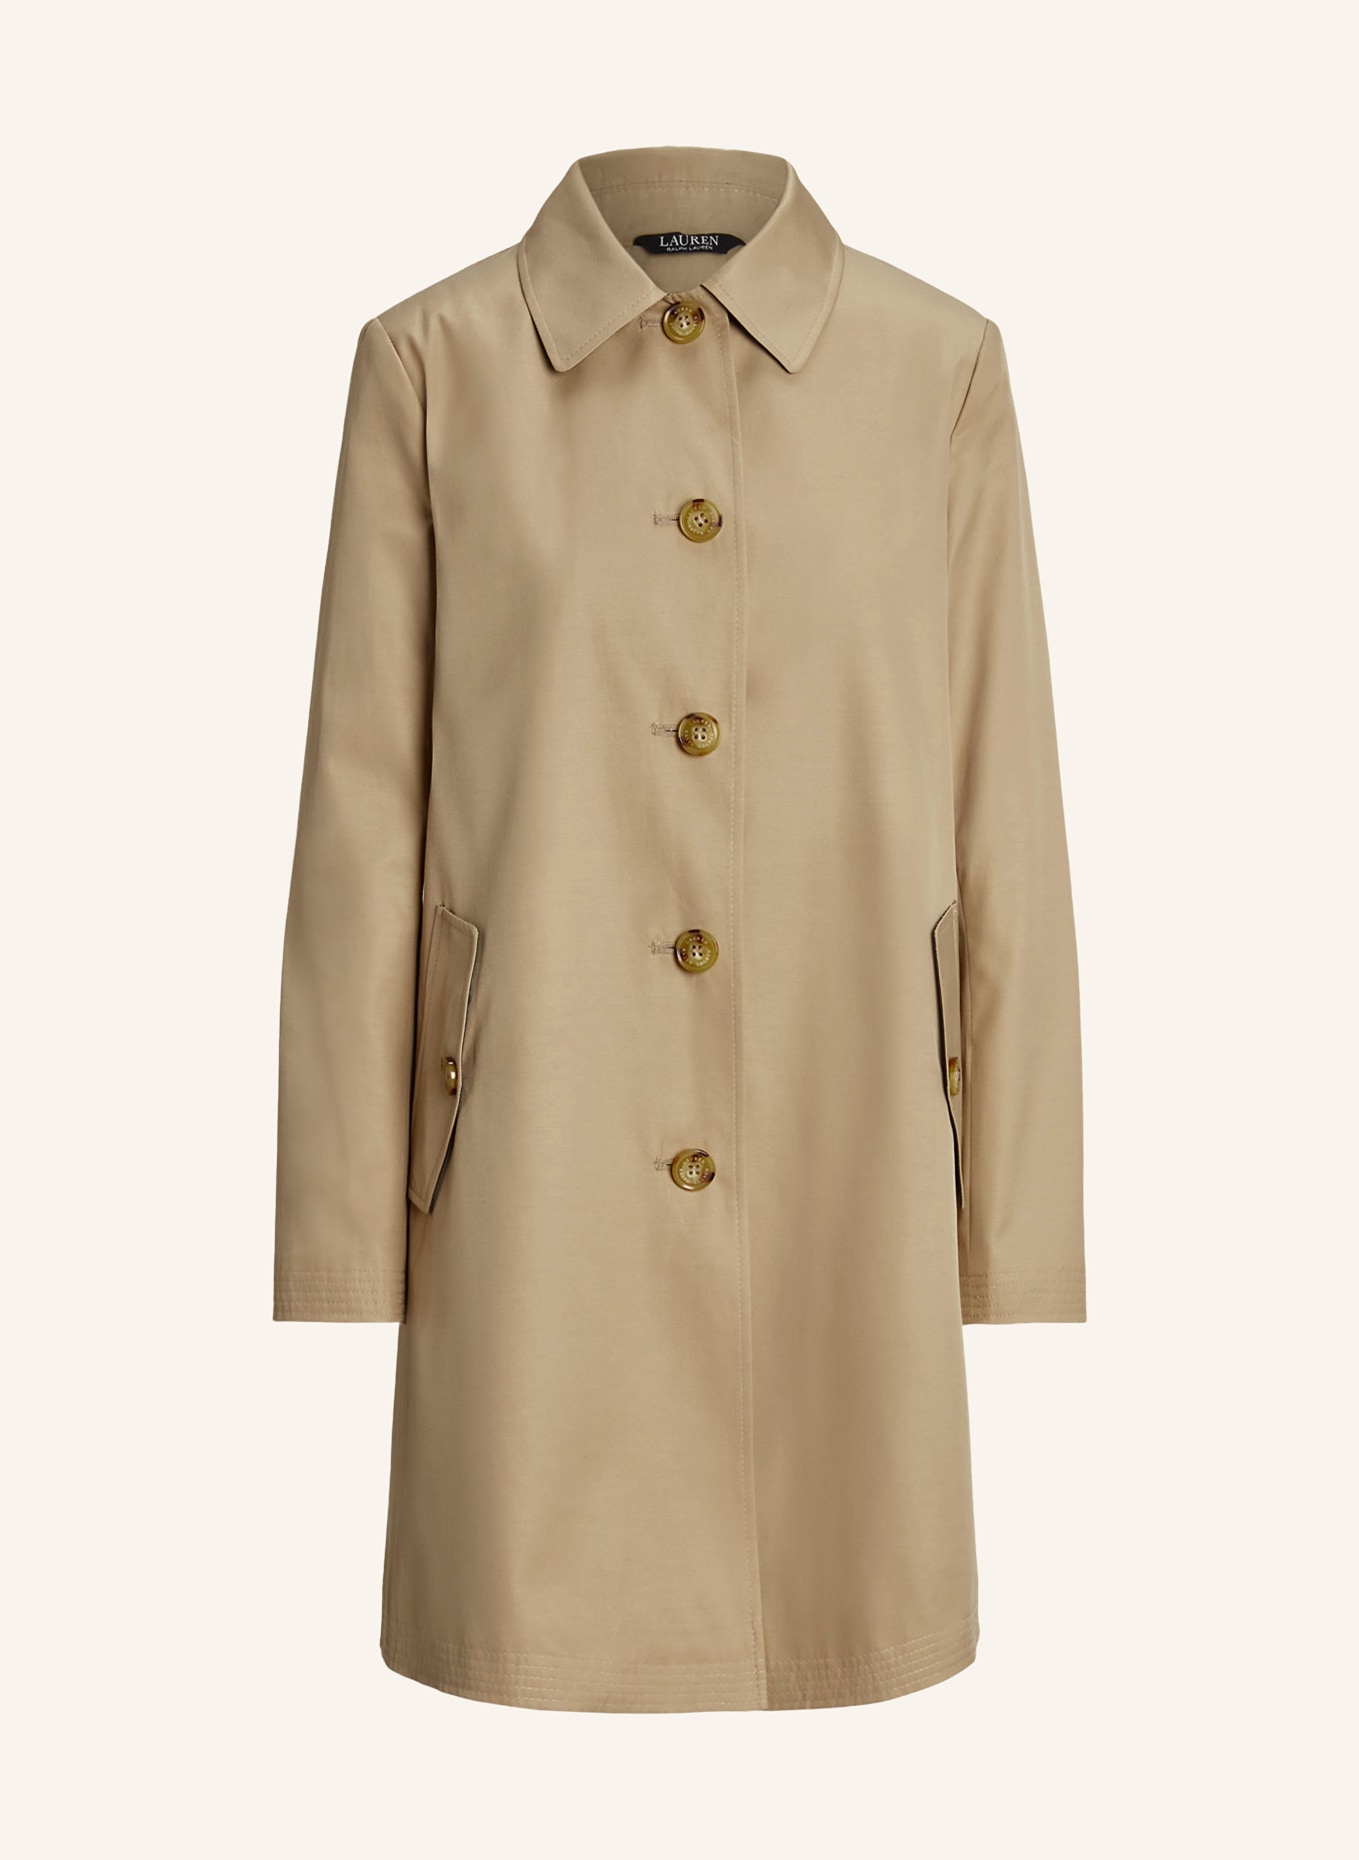 LAUREN RALPH LAUREN Trench coat, Color: BEIGE (Image 1)